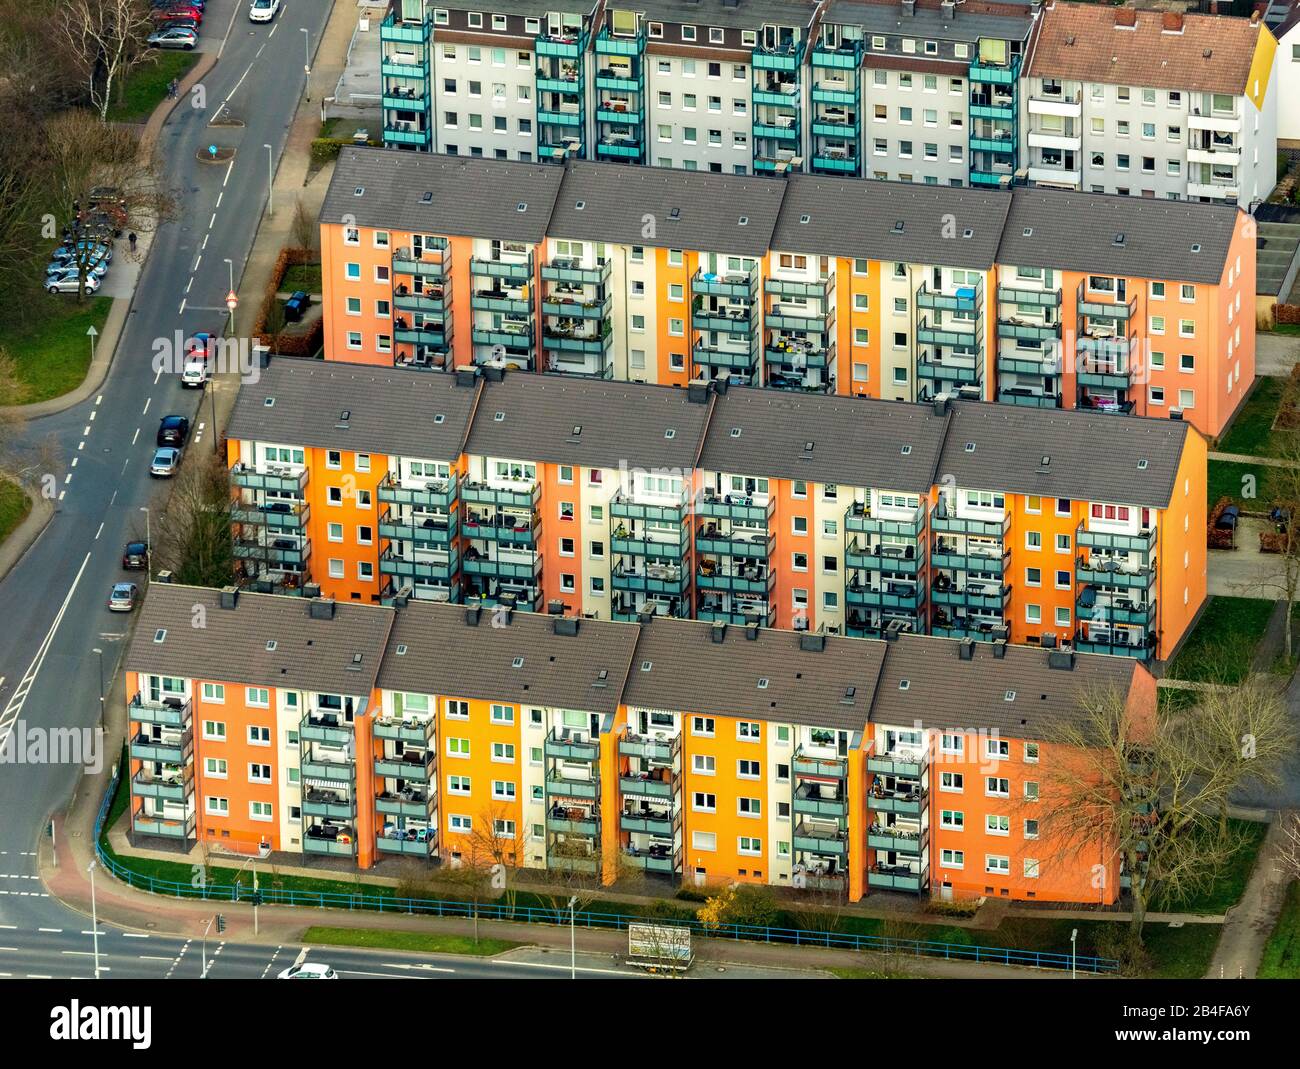 Luftbild, Wohnanlage Horststraße, Herforder Straße, Mietshaus, Mietshäuser, Balkone, Herne, Ruhrgebiet, Nordrhein-Westfalen, Deutschland Stockfoto